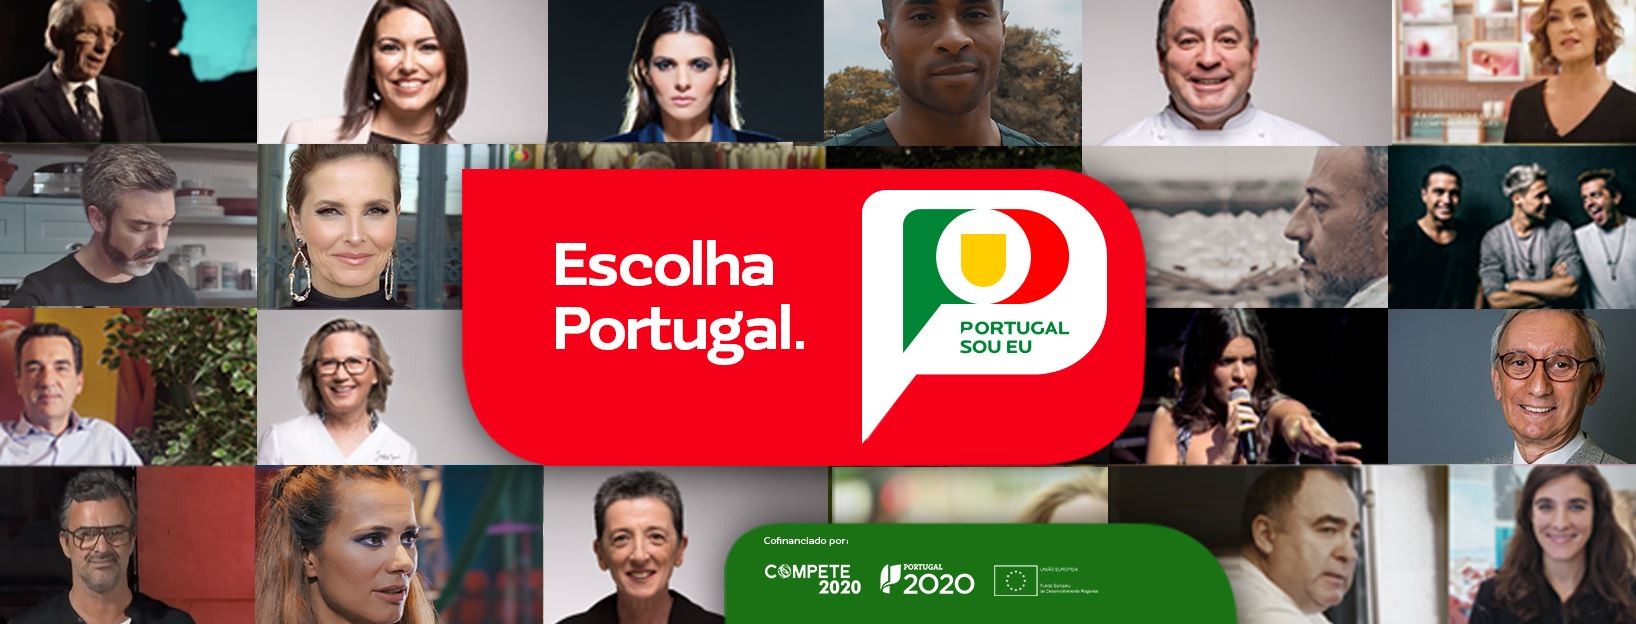 Portugal Sou Eu 2020